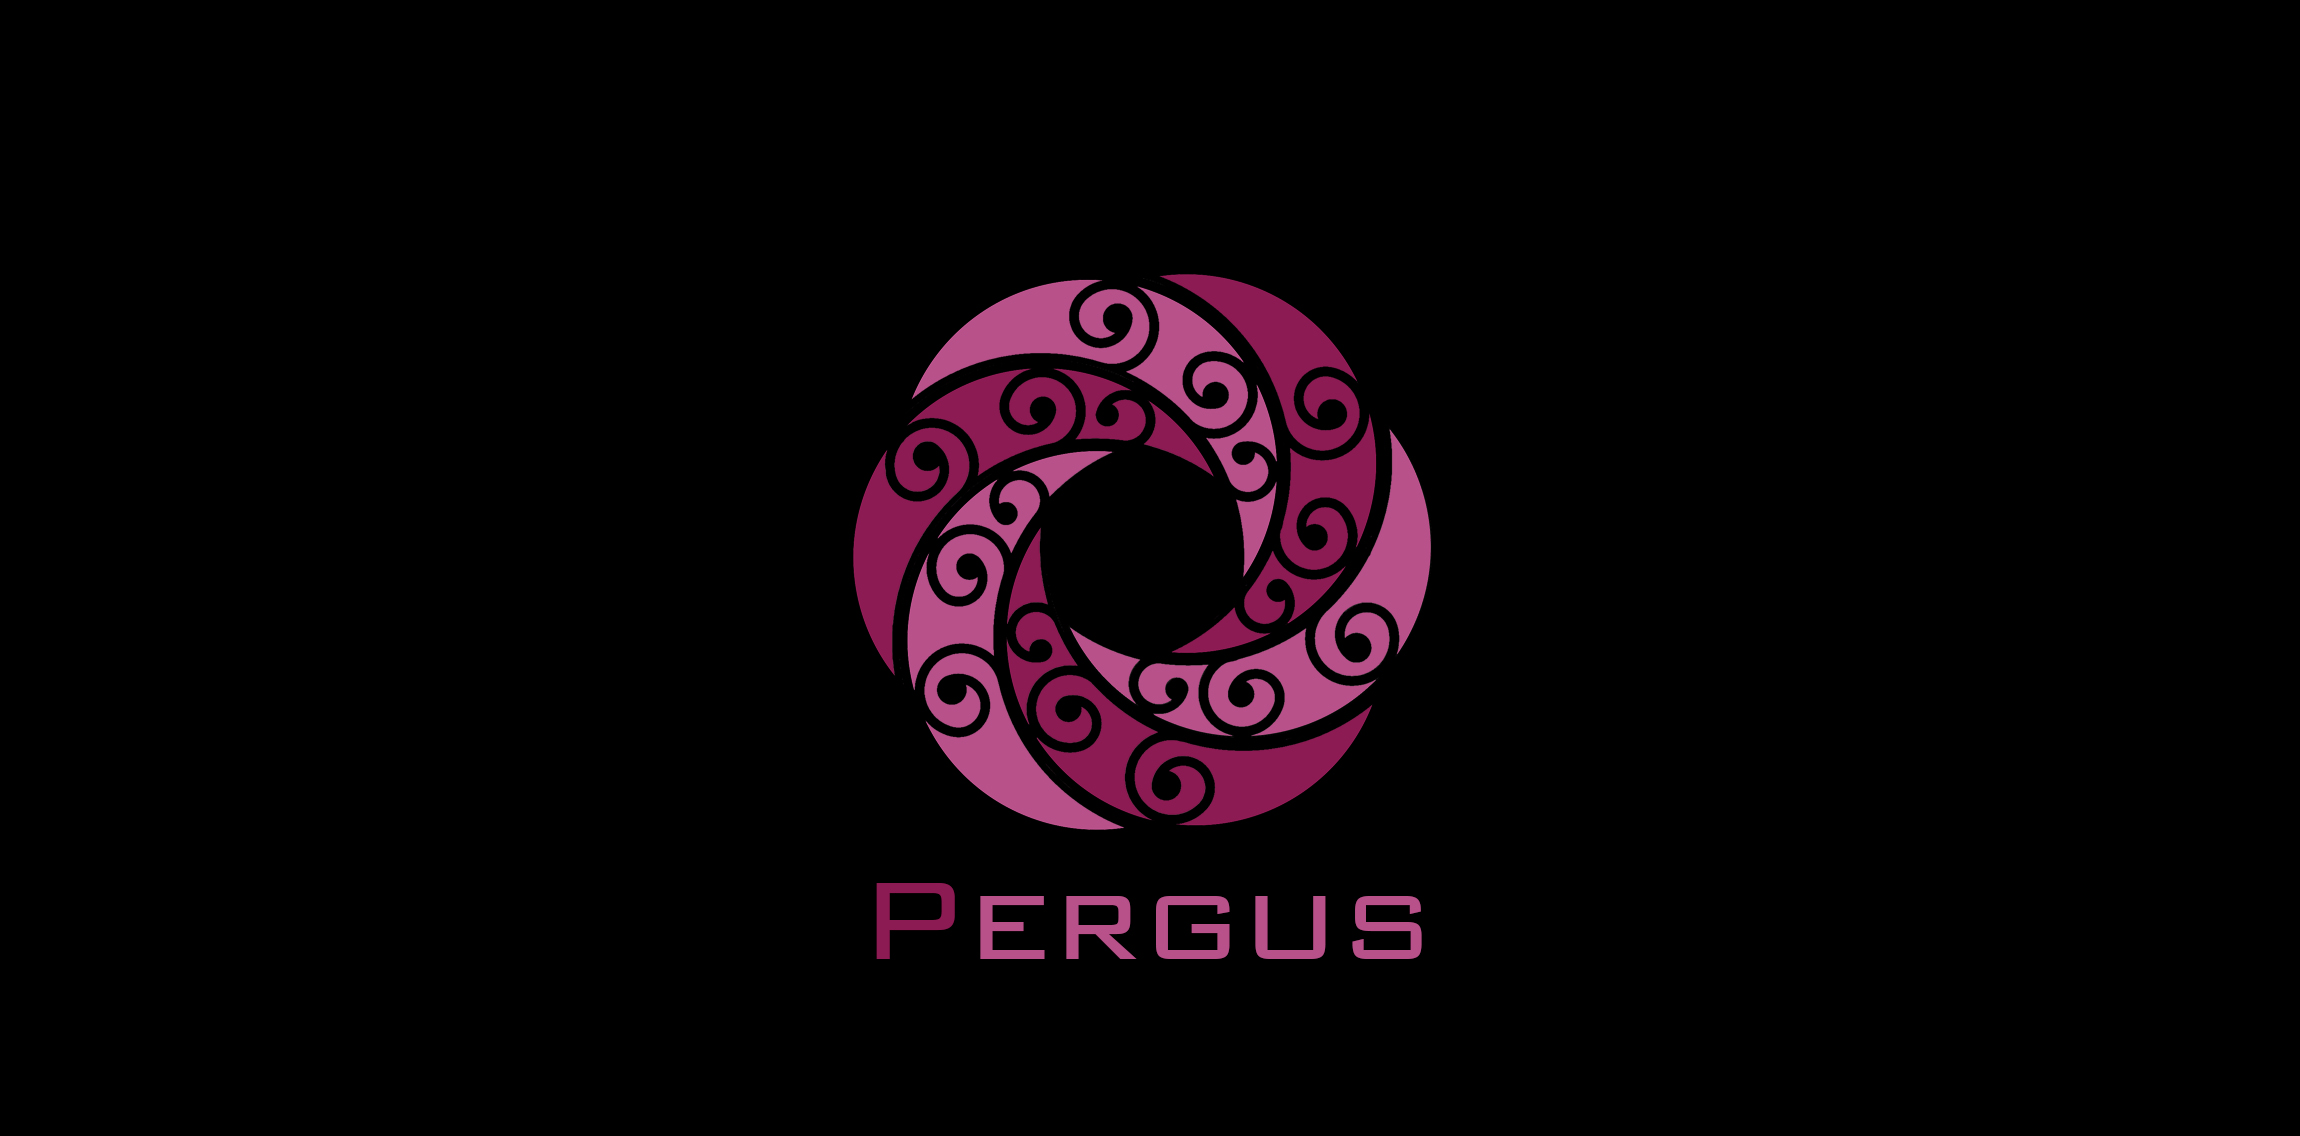 Pergus Industrial Group